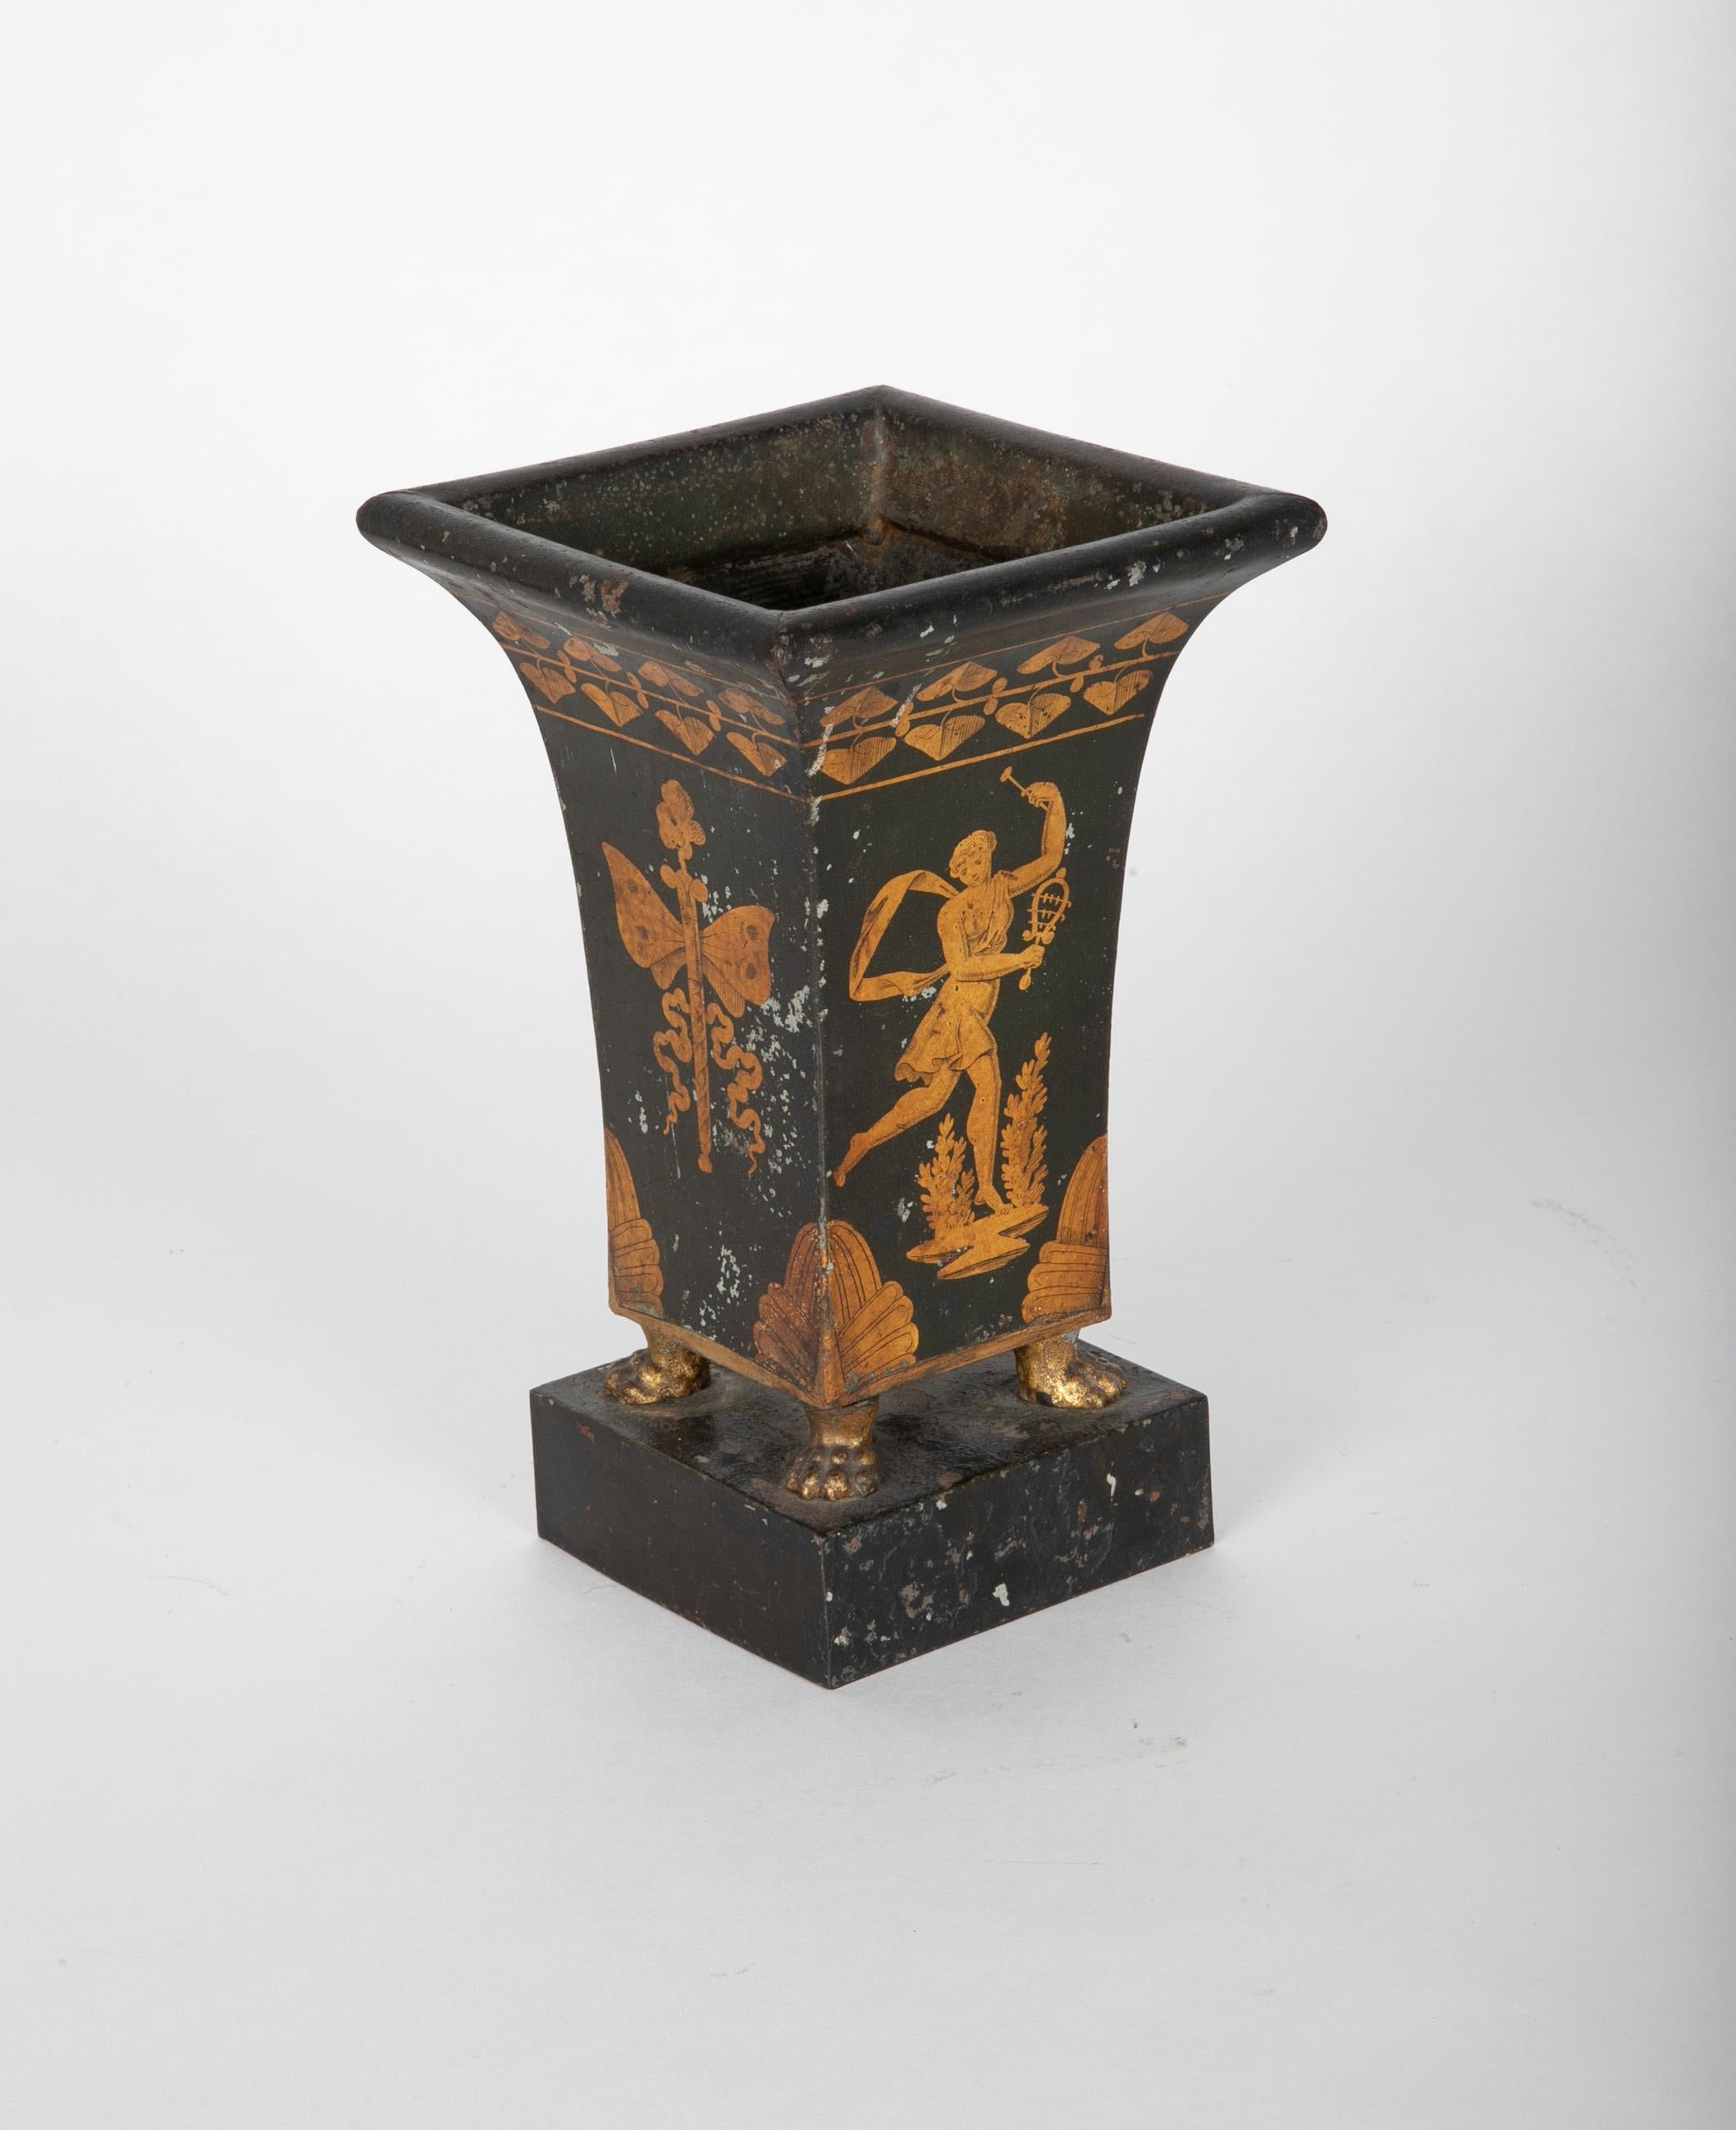 Un très charmant vase ou urne en tole peinte français du début du 19ème siècle avec une figure dorée d'une jeune fille dansant avec une poitrine exposée jouant d'un sistrum, instrument de musique ancien. L'urne repose sur une plinthe rectangulaire